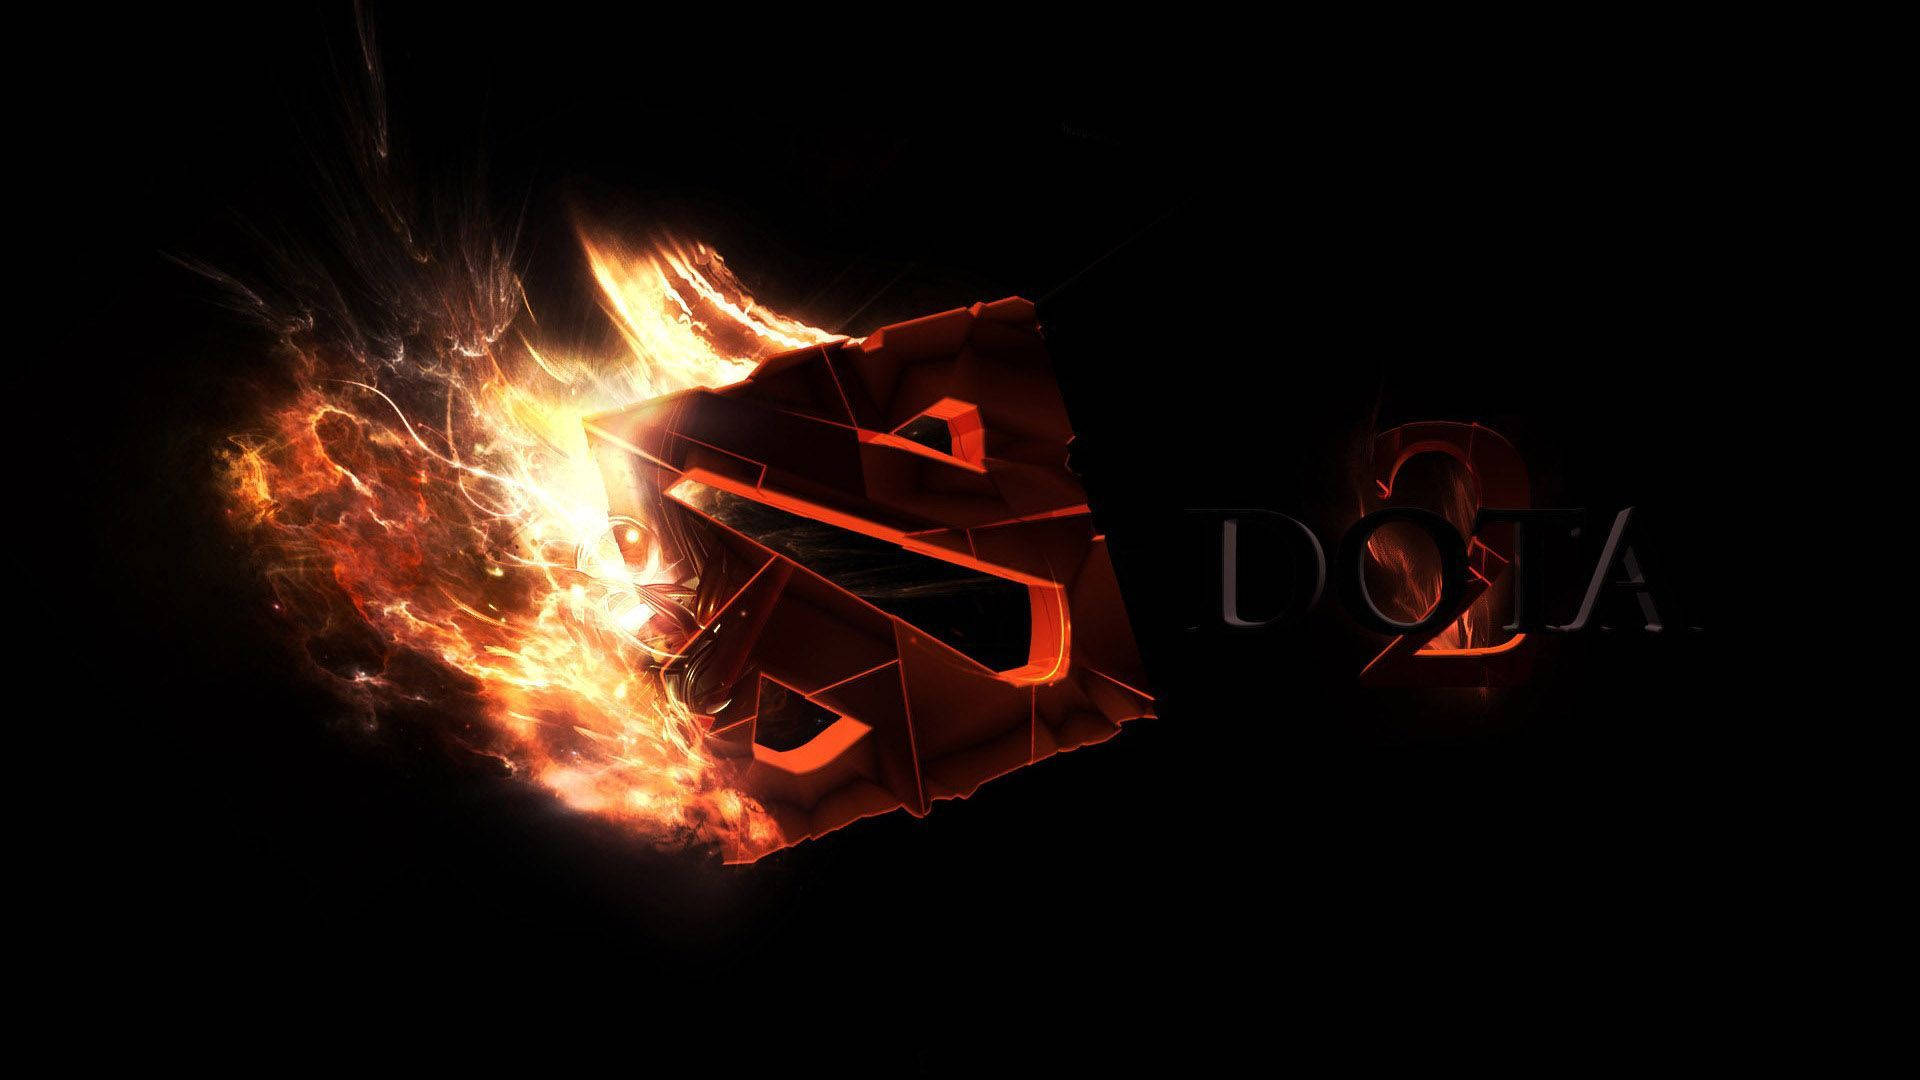 Dota 2 Logo On Fire Wallpaper